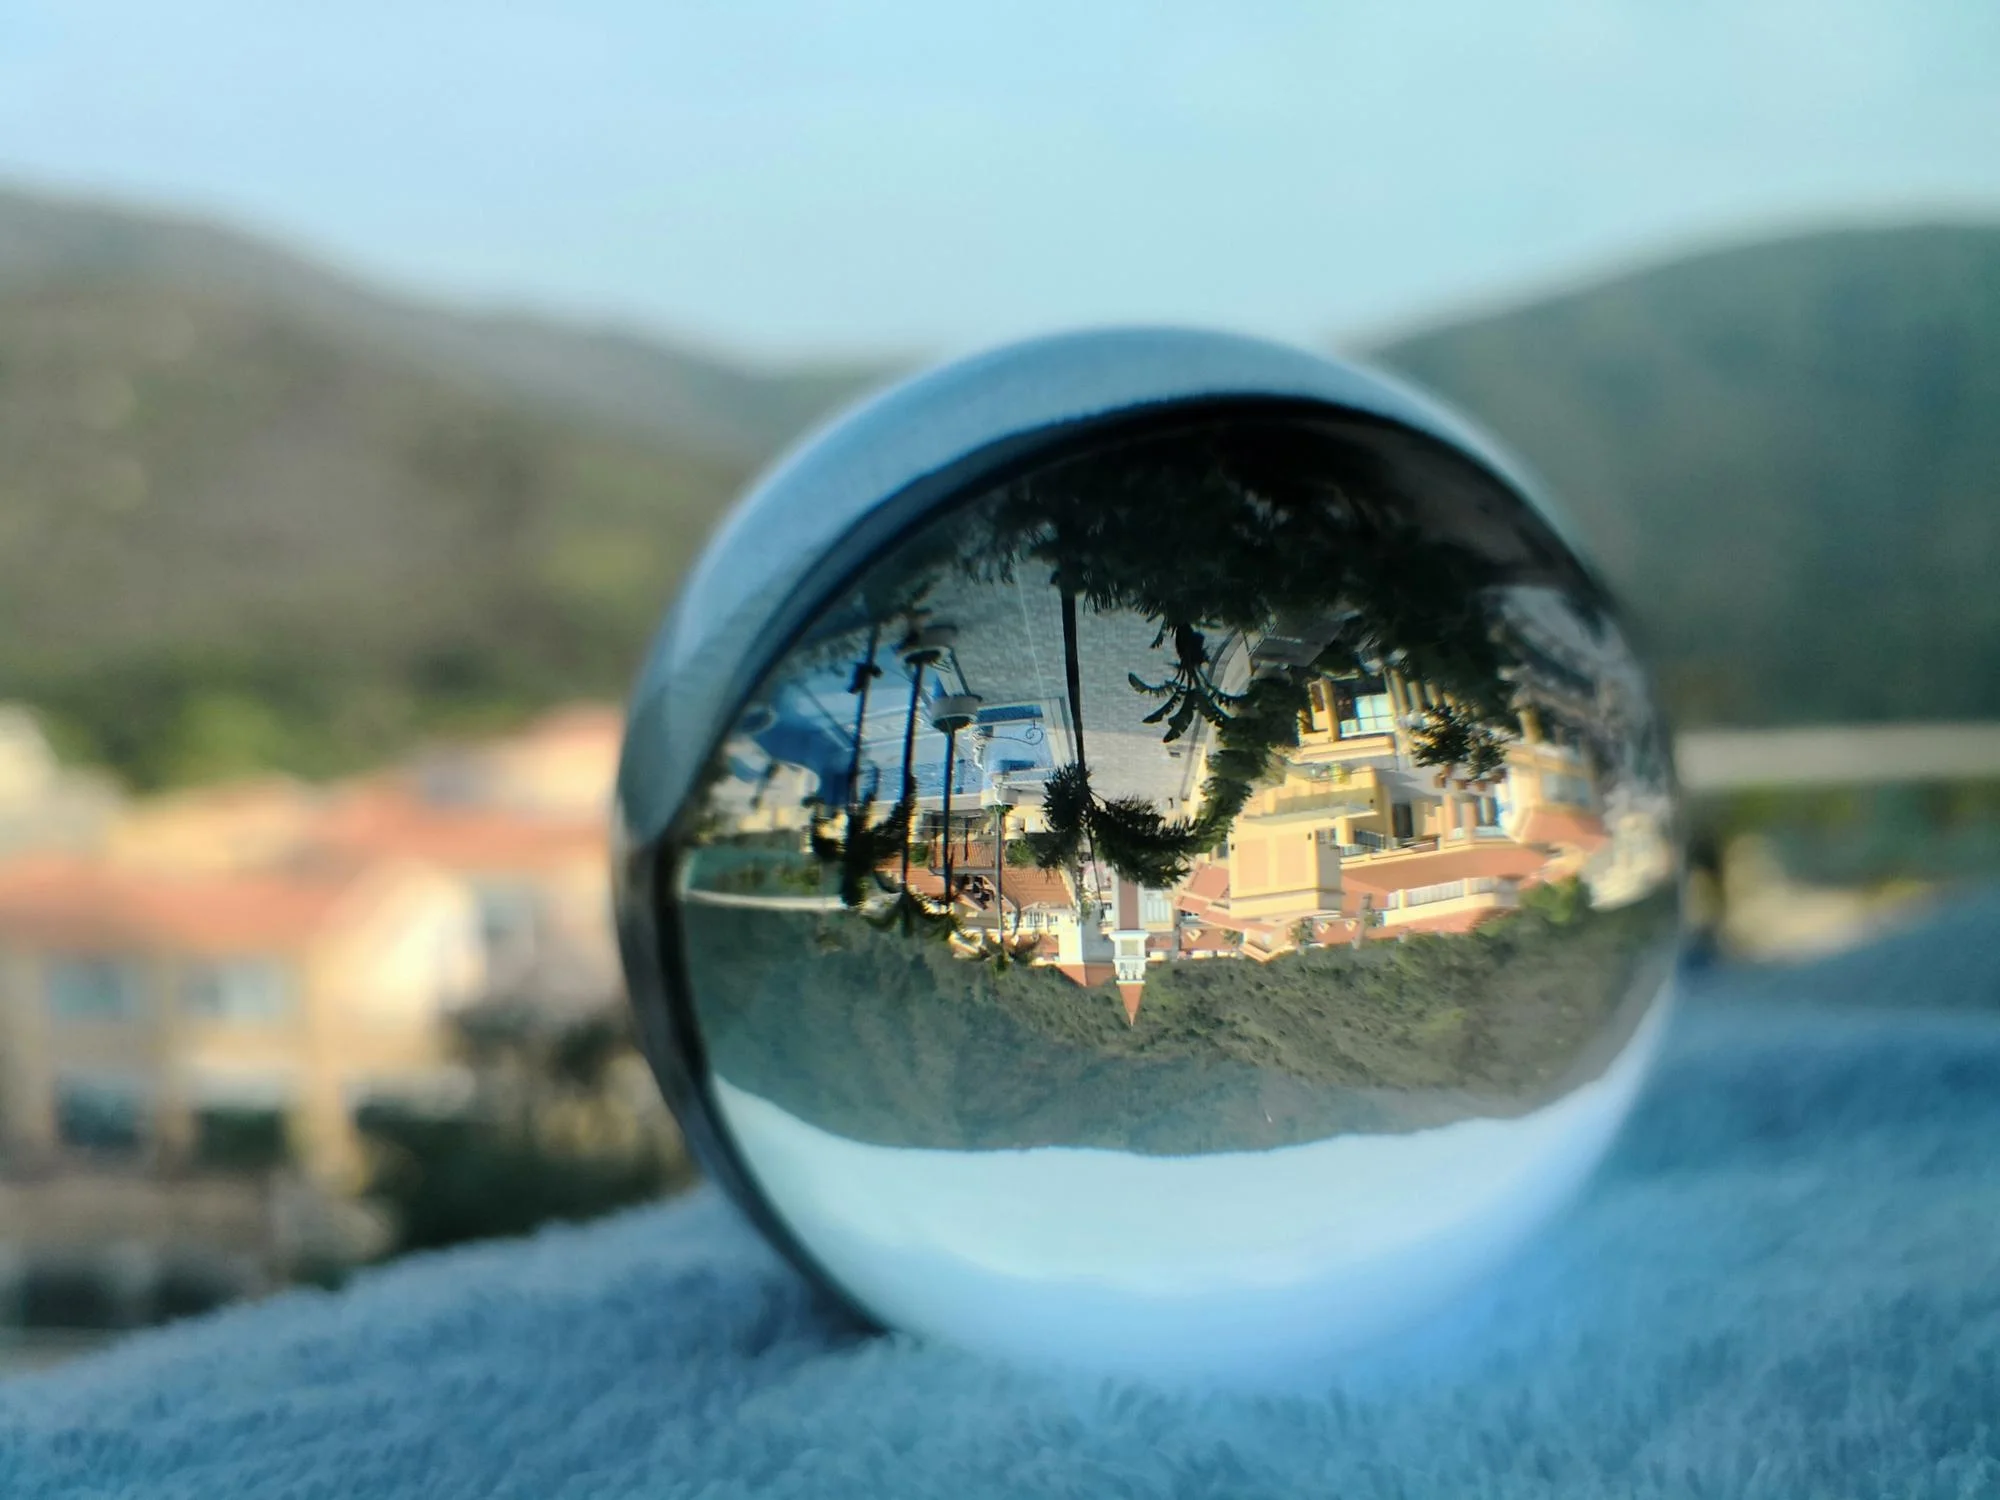 Оптовая продажа китайский производитель фабрика 60 мм прозрачный стеклянный шар хрустальный с подставкой для фотографии поставщик